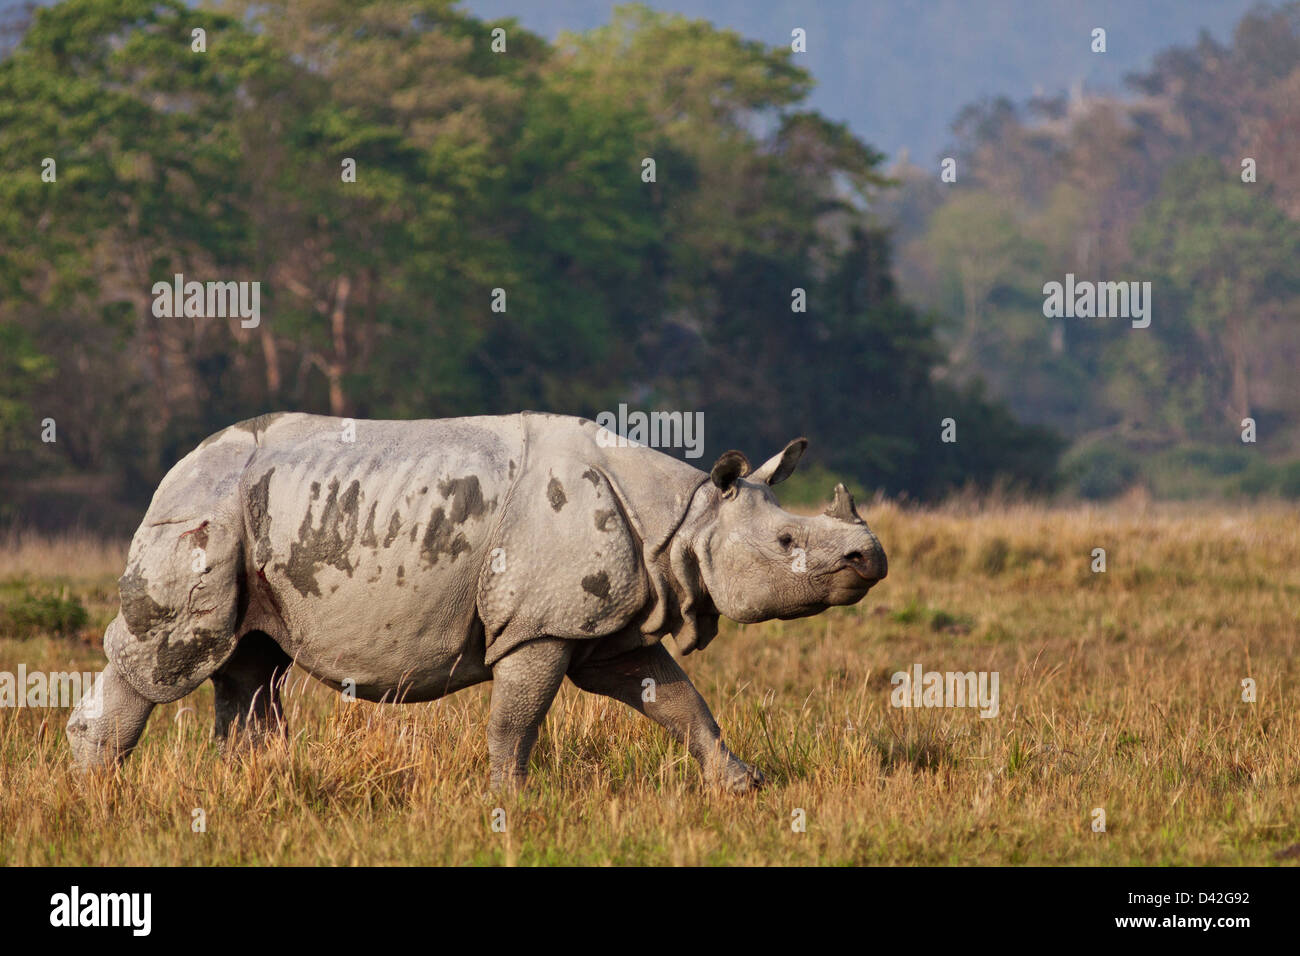 Un rhinocéros unicornes en déplacement, le parc national de Kaziranga, Inde. Banque D'Images